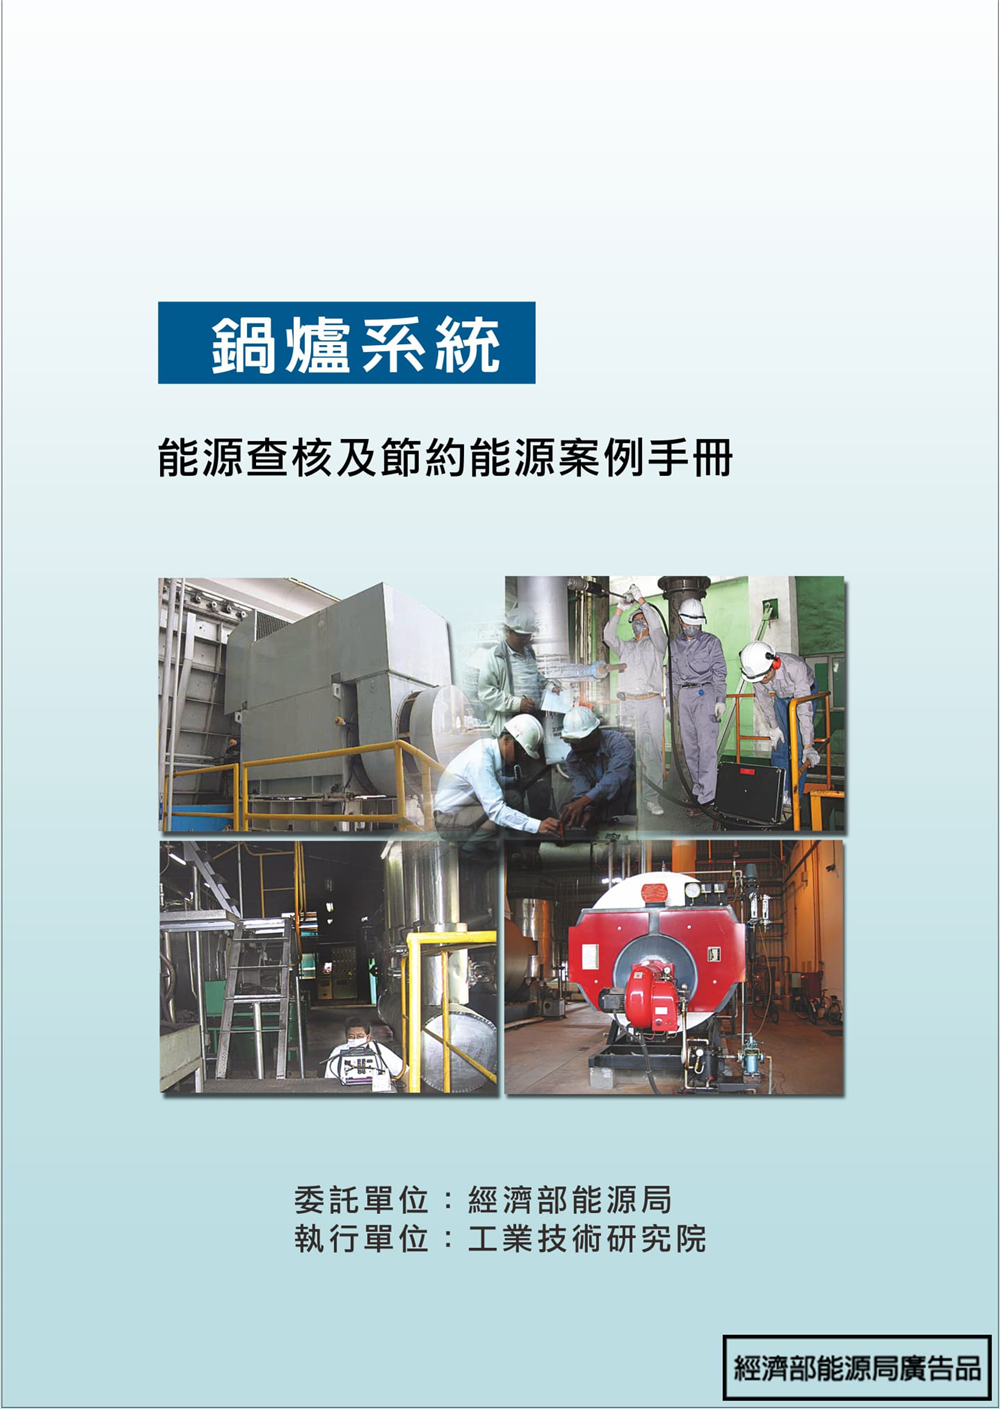 能源查核與節約能源案例手冊-鍋爐系統 的封面圖